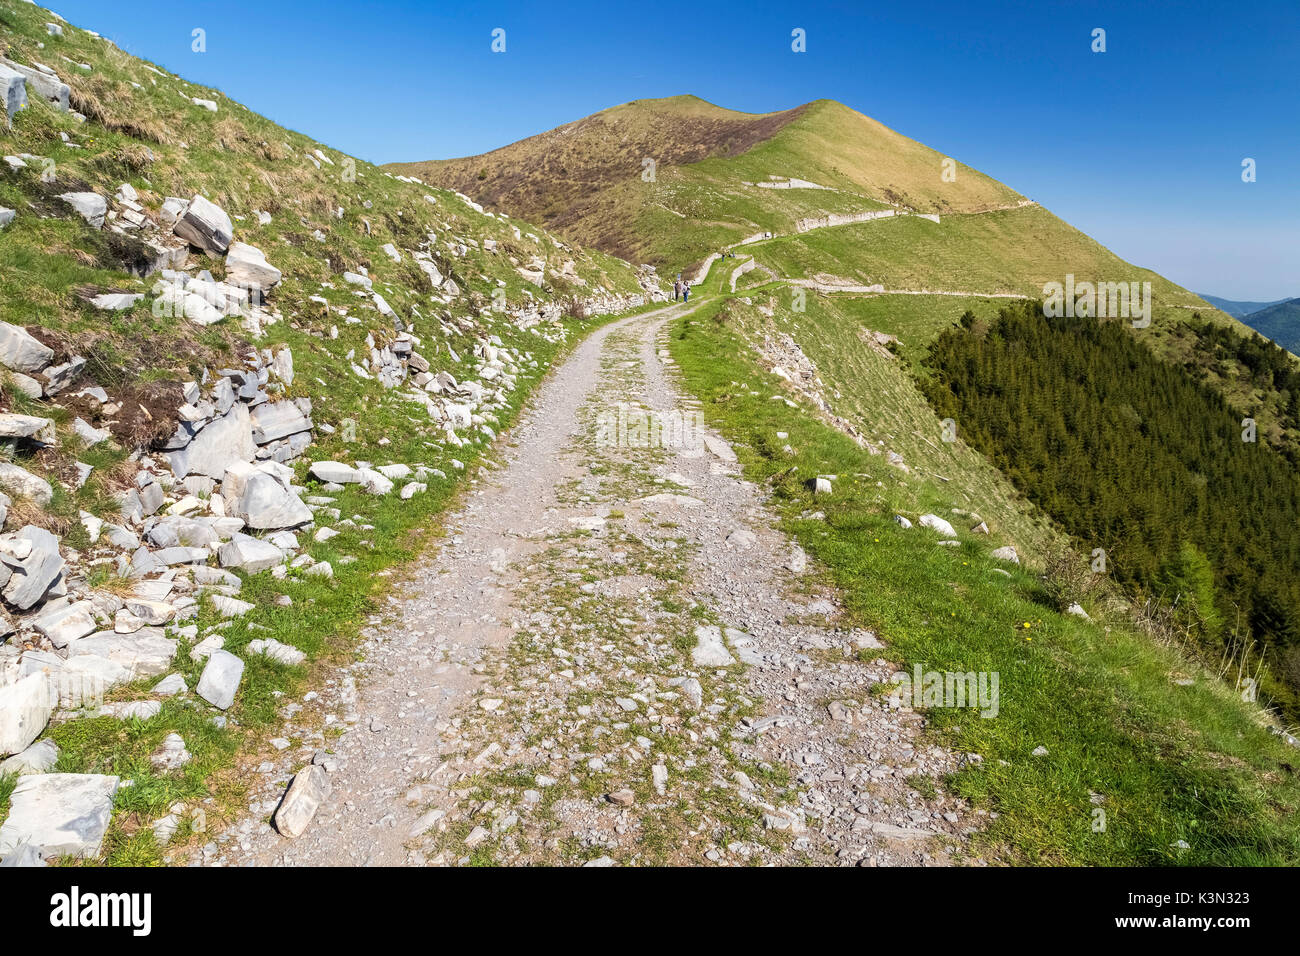 Road of Linea Cadorna towards Monte Tremezzo, Lombardy, Italy. Stock Photo